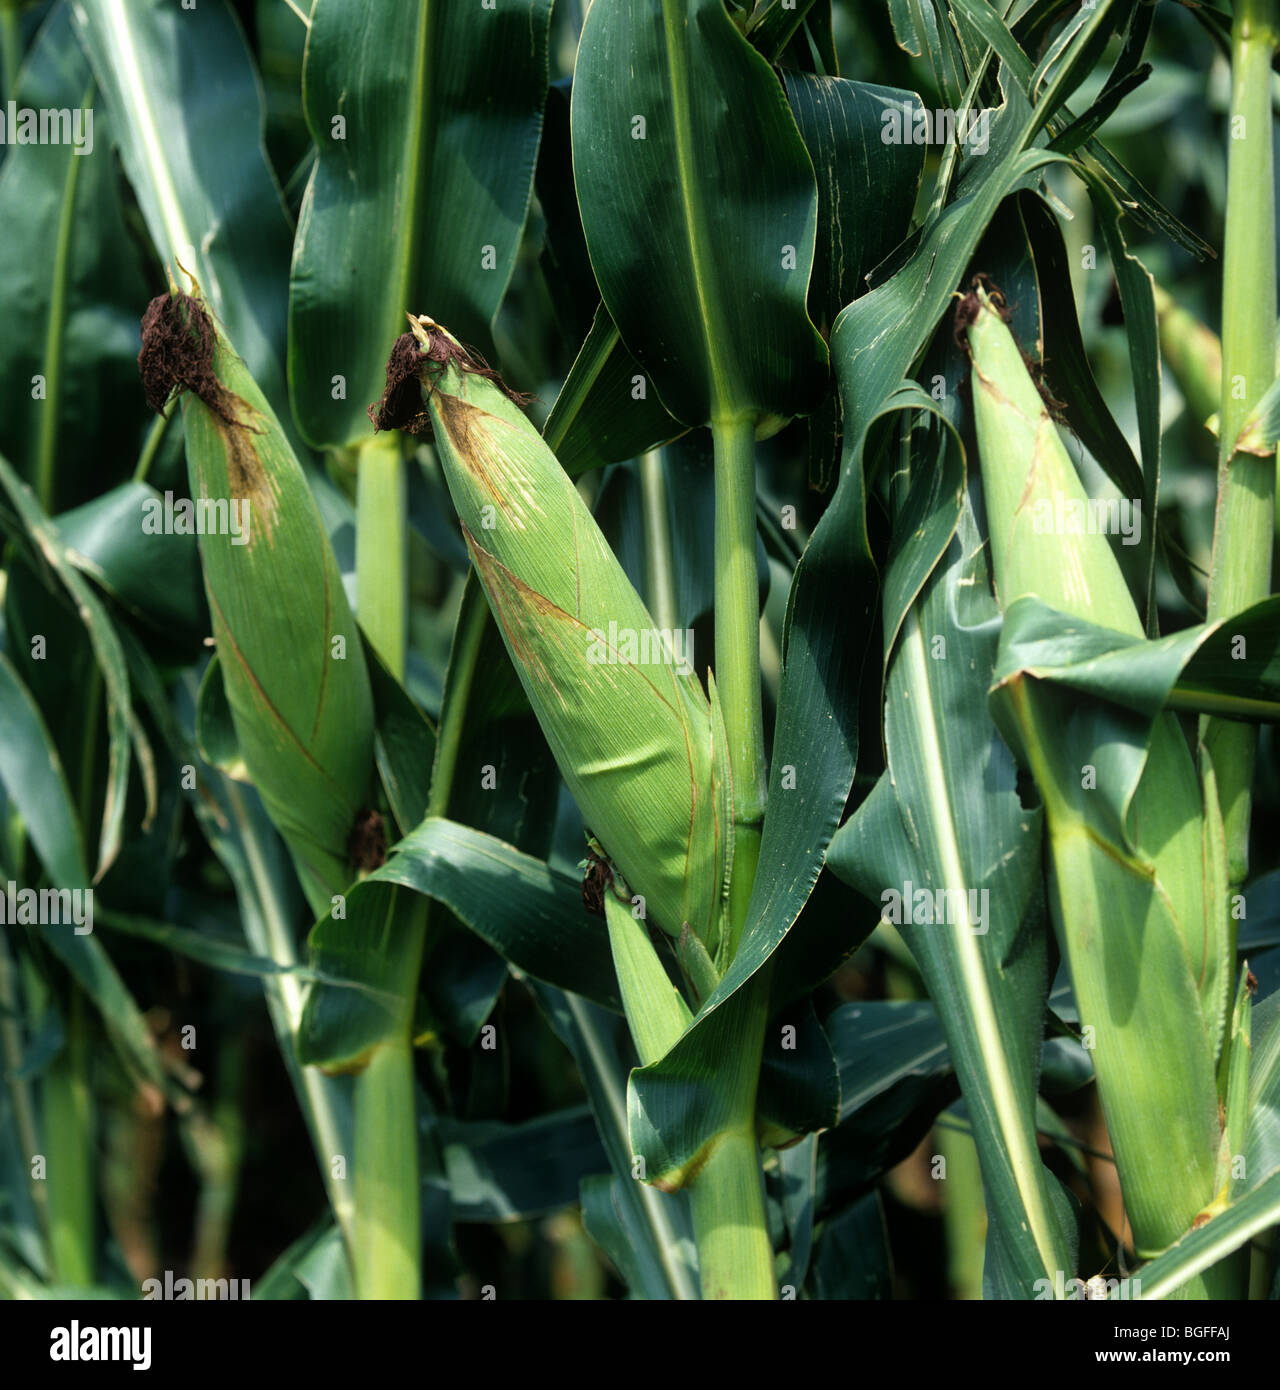 Coppia di mais o pannocchie di mais sulla pianta, Illinois, Stati Uniti d'America Foto Stock